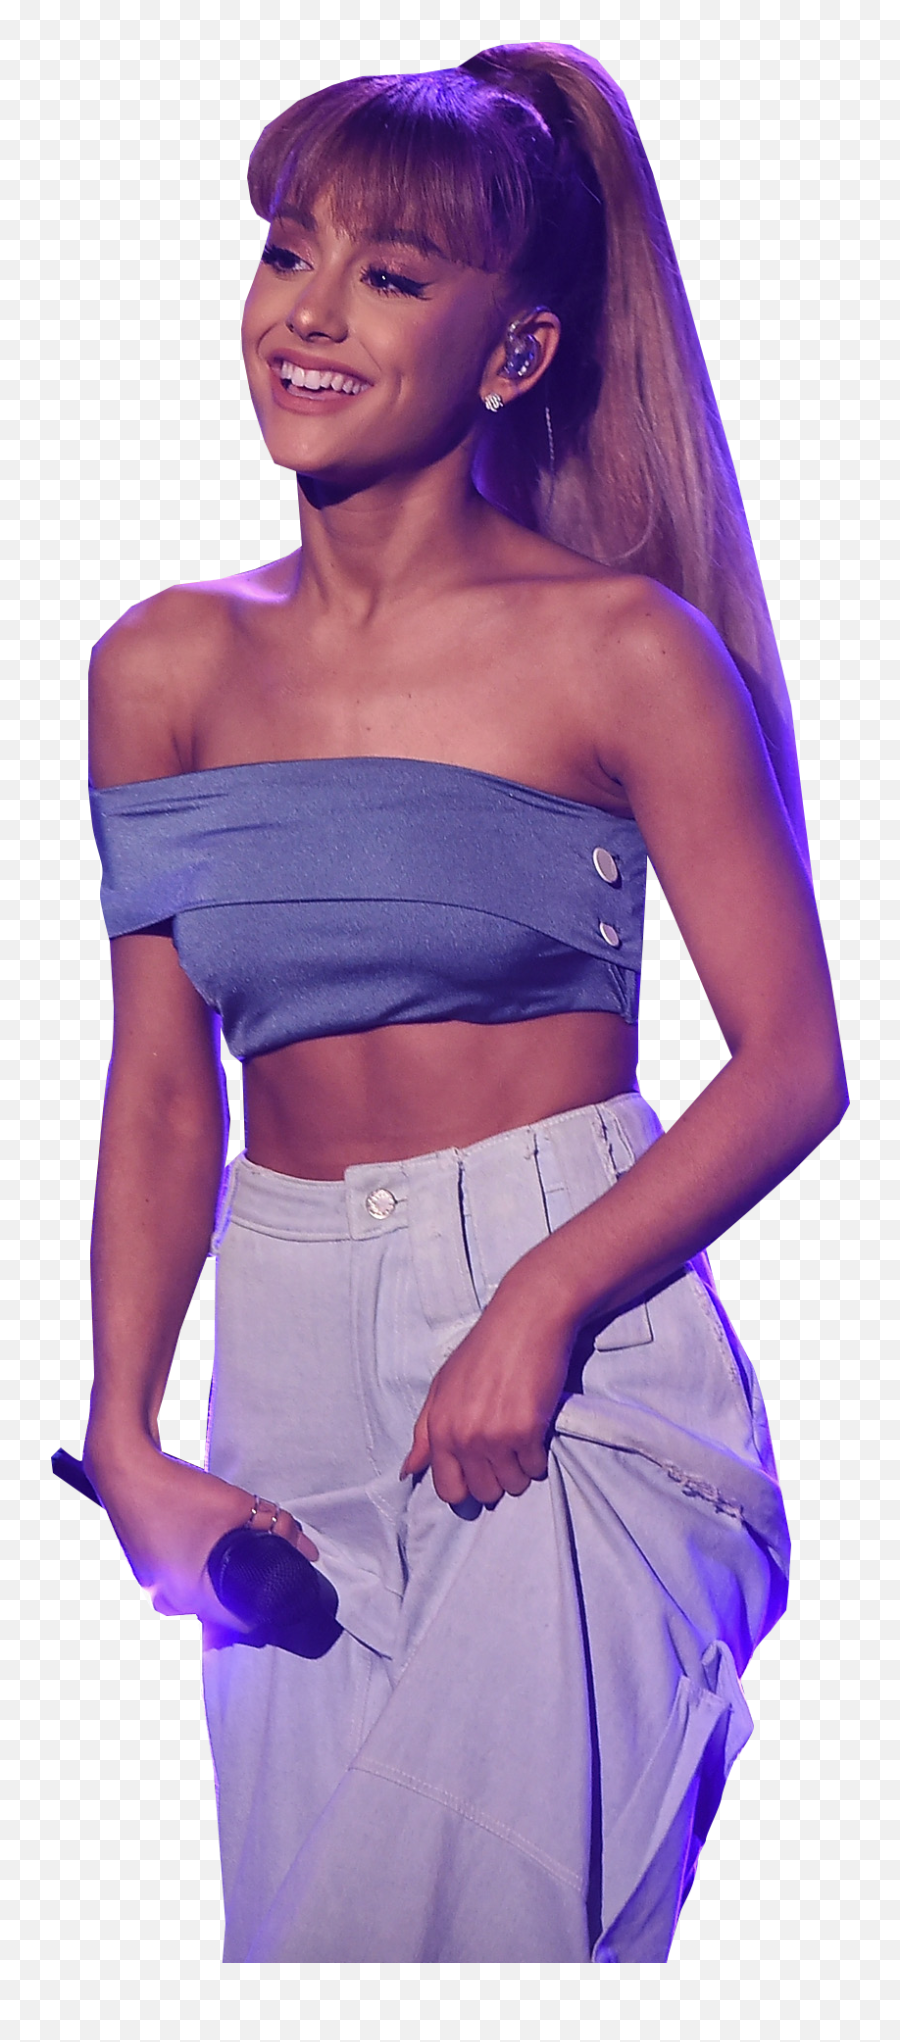 Ariana Grande Dress Png Transparent - Ariana Grandes Picture No Background,Ariana Grande Transparent